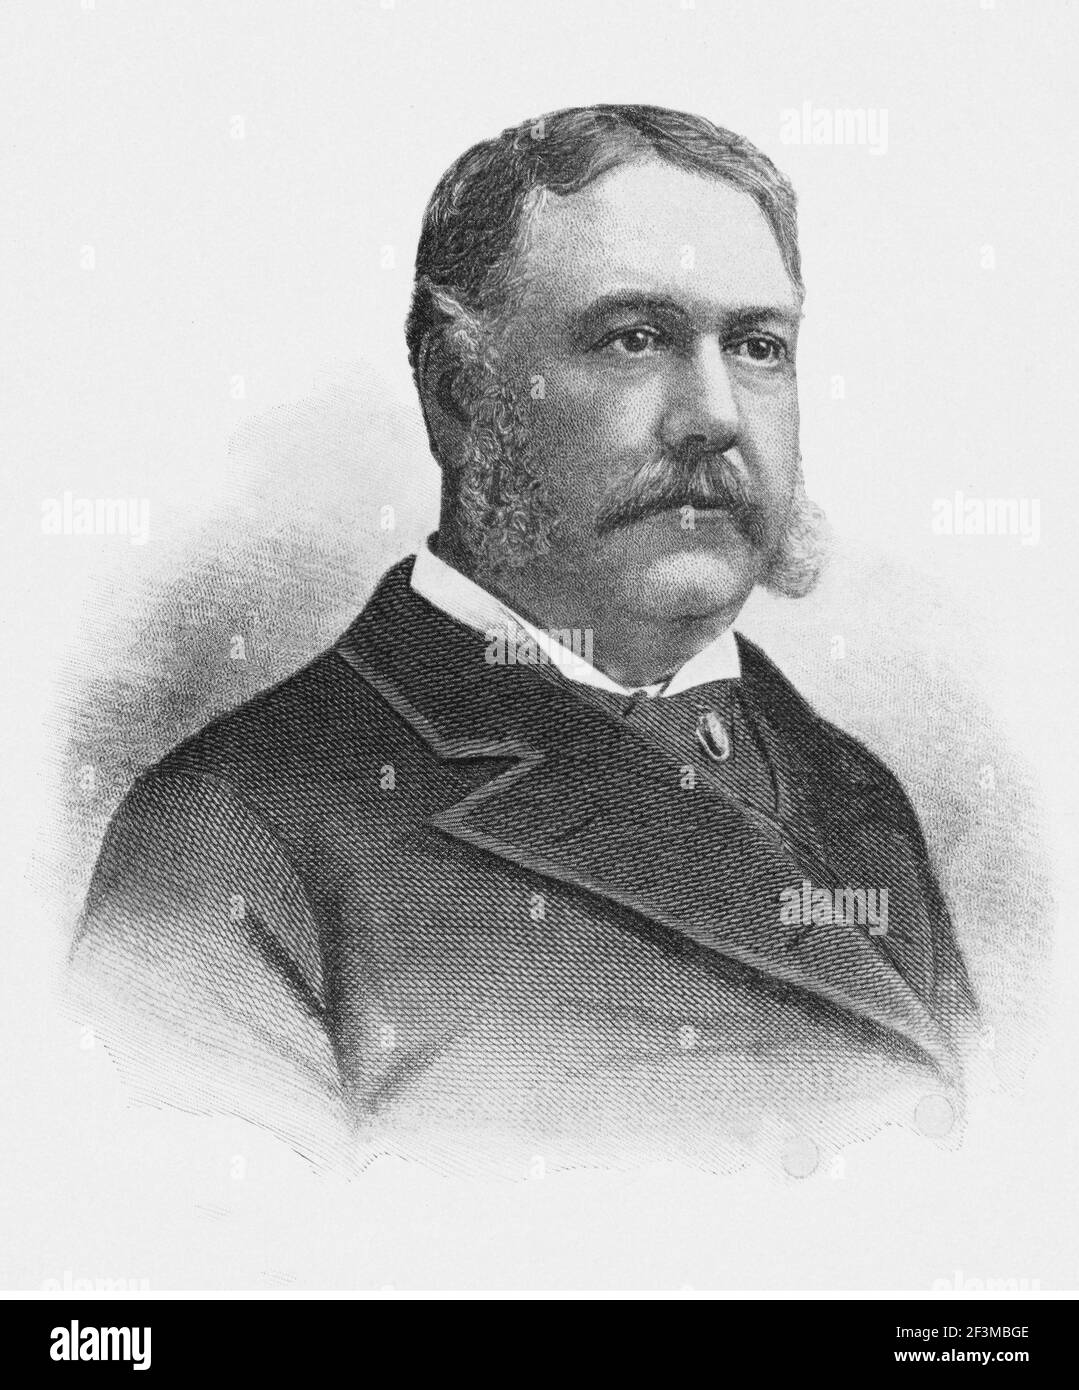 Portrait du président Chester Alan Arthur. Chester Alan Arthur (1829 – 1886) était un avocat et homme politique américain qui a été le 21e président Banque D'Images